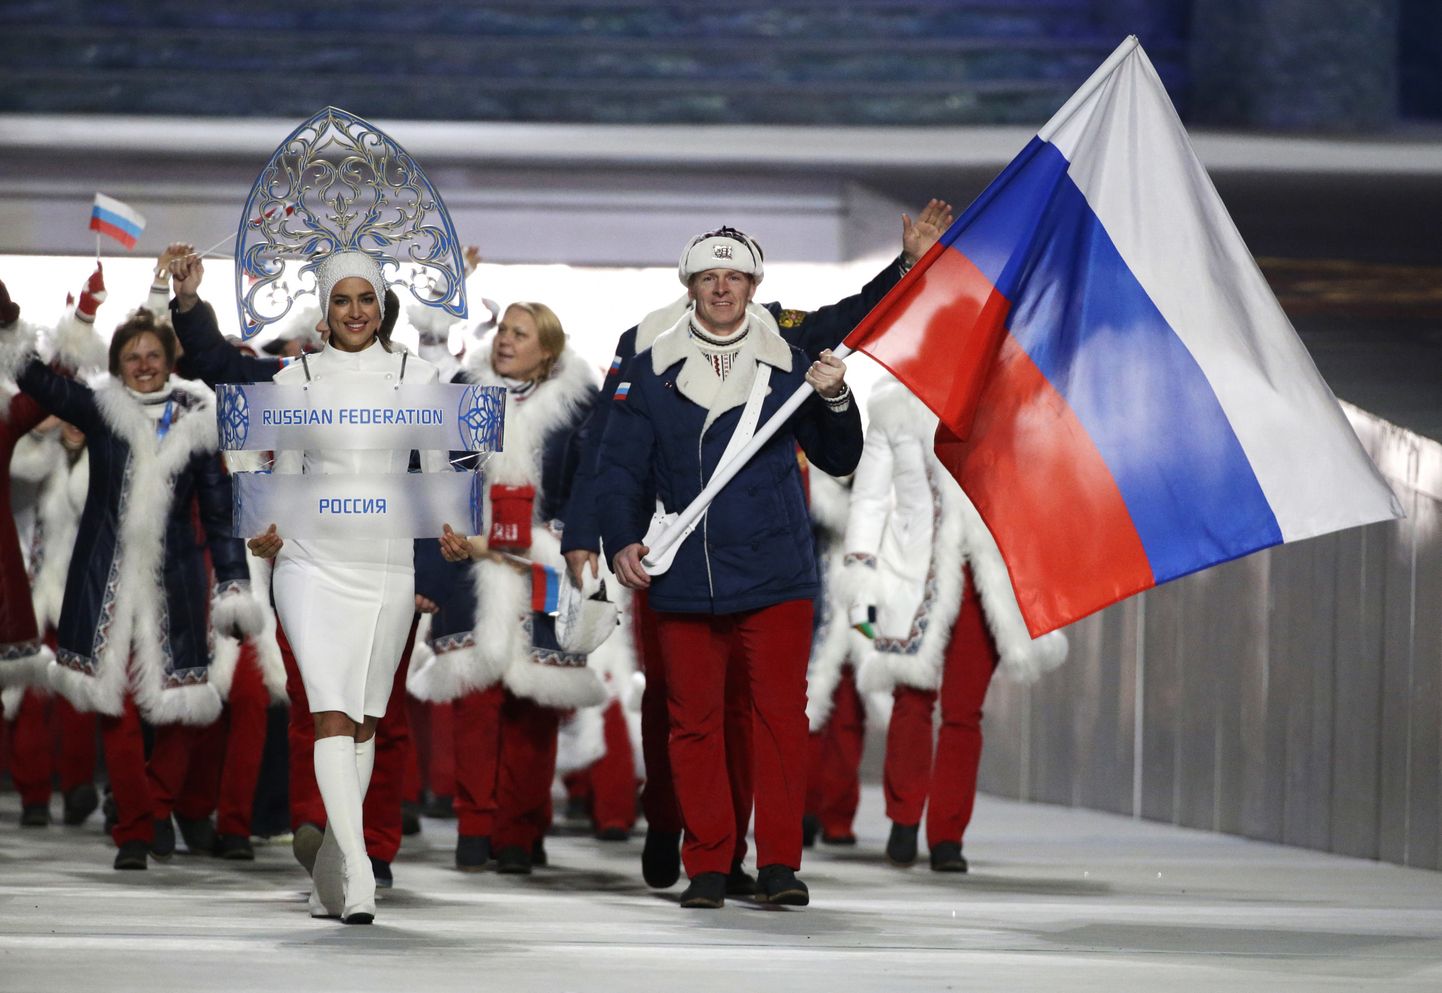 Venemaa koondise sissemarss Sotši olümpiamängude avatseremoonial. Lippu kannab bobisõitja Aleksander Zubkov, kes võitis Sotšis nii kahe- kui ka neljabobil kuldmedali, millest ta praeguseks ROKi distsiplinaarkomisjoni otsusel on seoses dopingurikkumisega ilma jäetud.